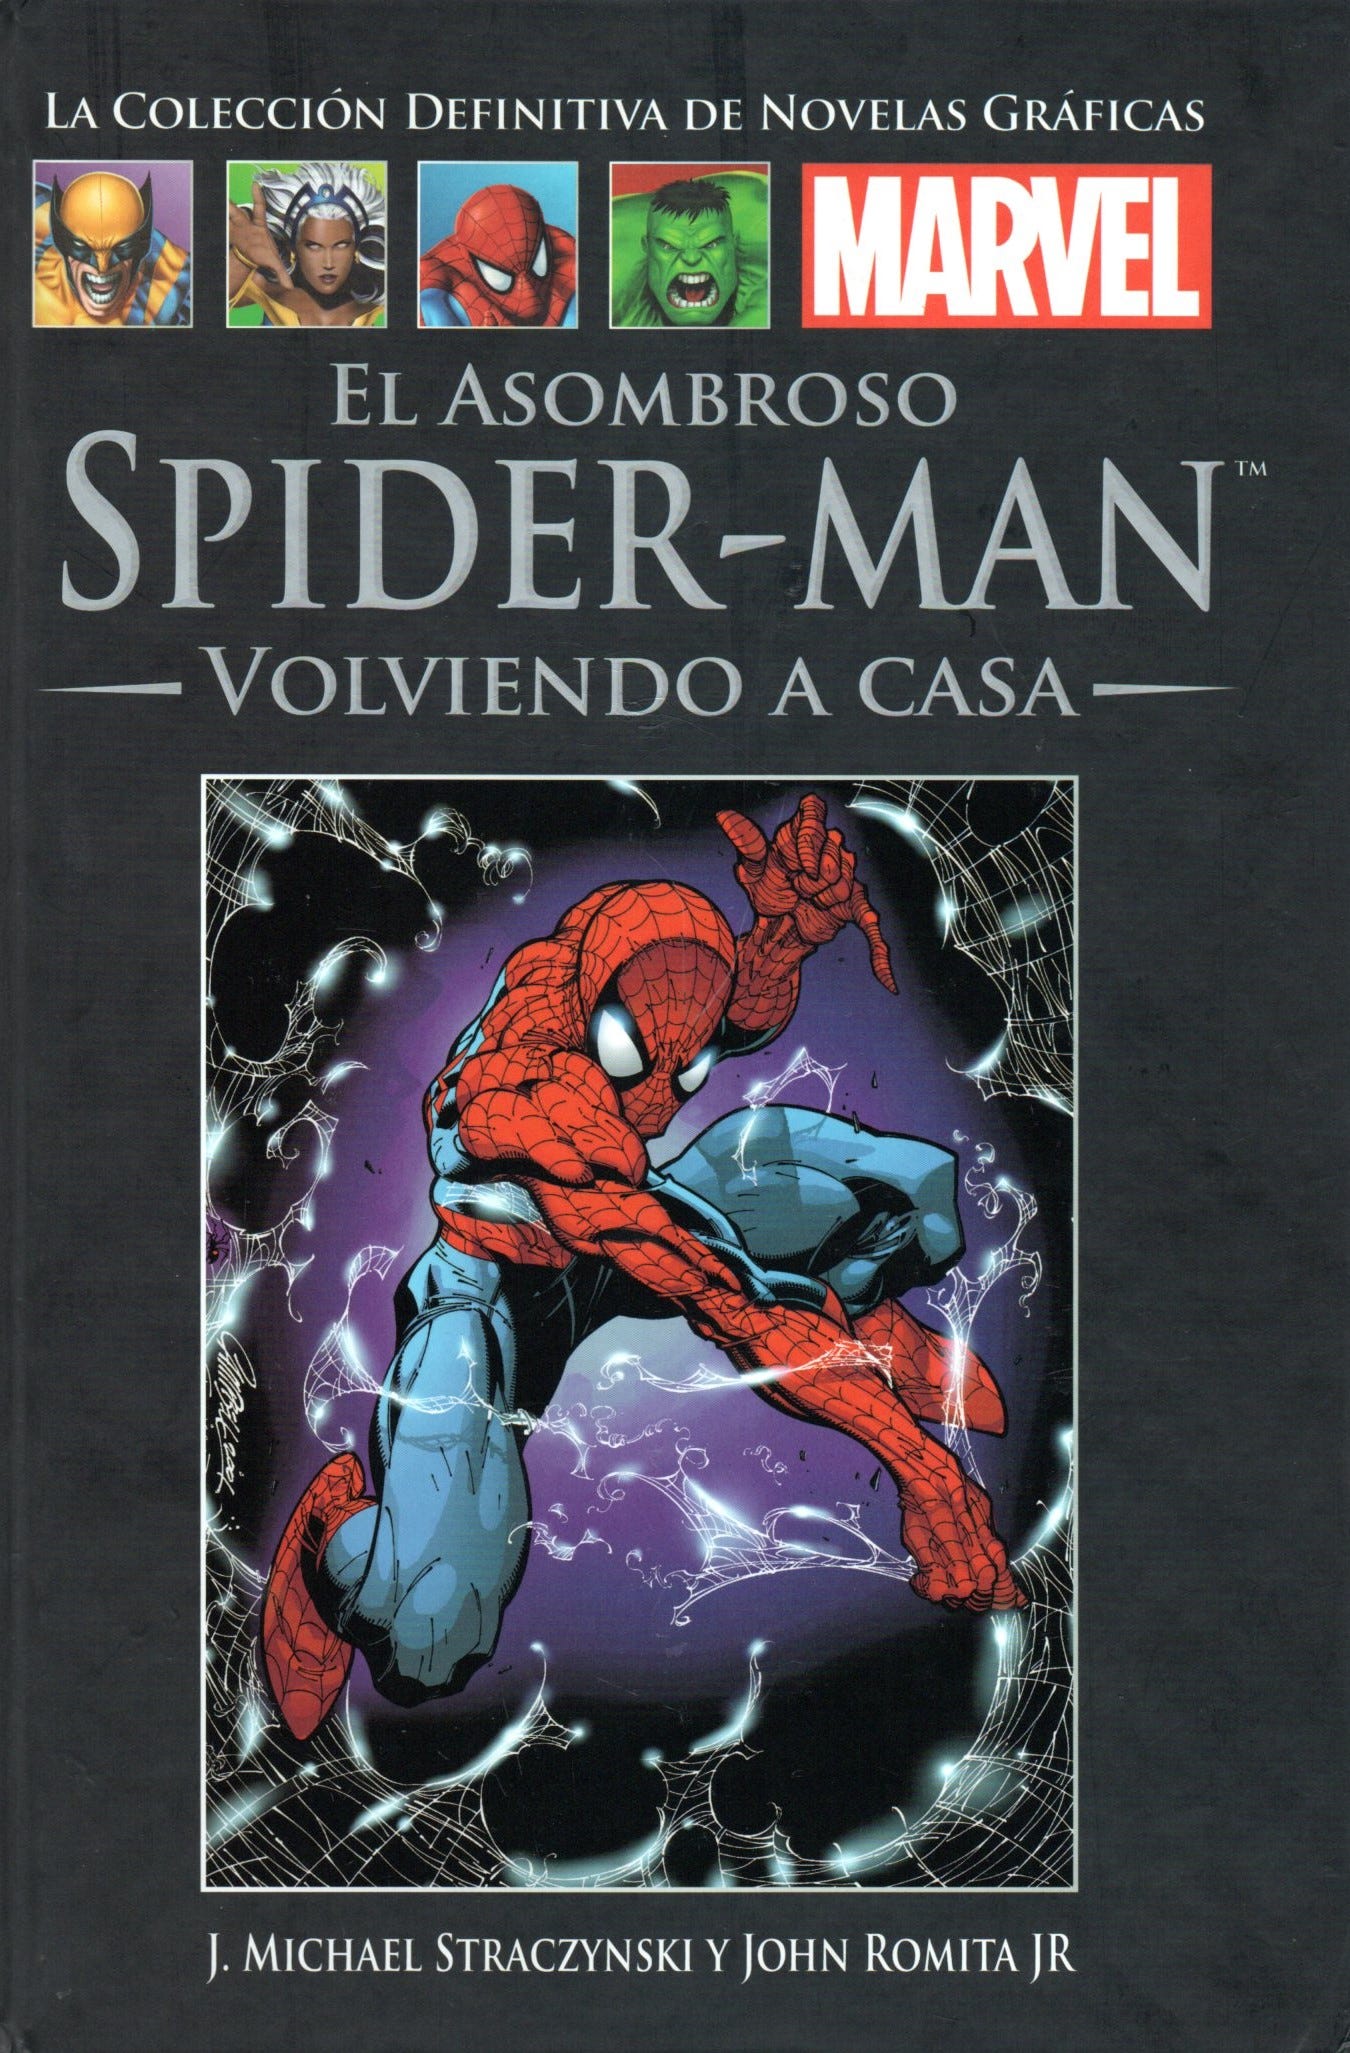 EL ASOMBROSO SPIDER-MAN, VOLVIENDO A CASA. RESEÑA Y ANÁLISIS SEMIÓTICO - Parte 1 de 6.